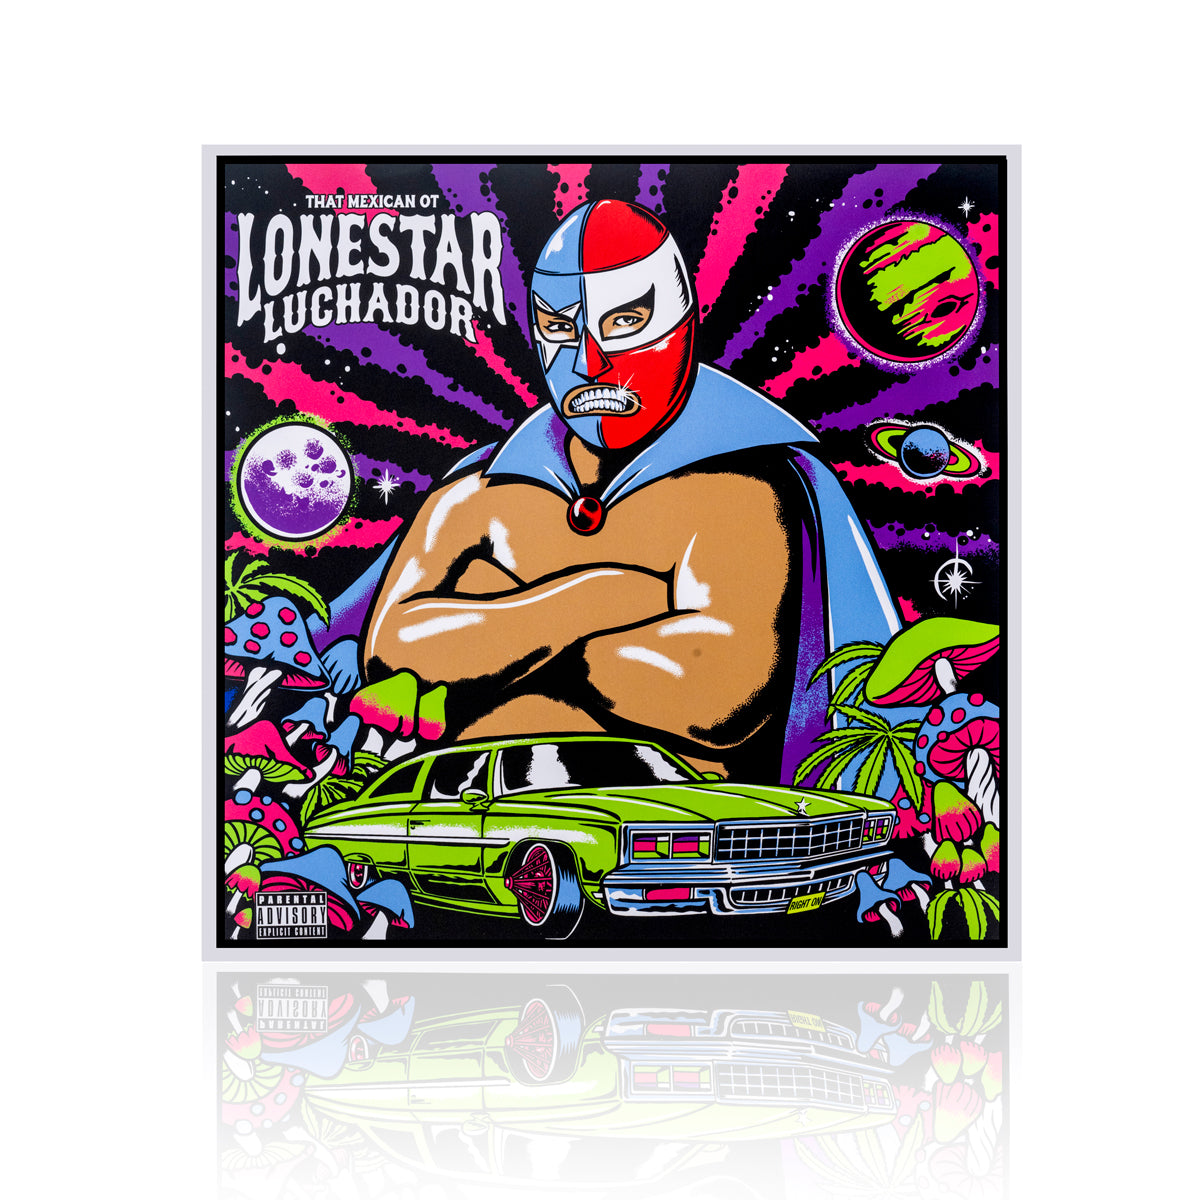 Lonestar Luchador Deluxe Art Vinyl